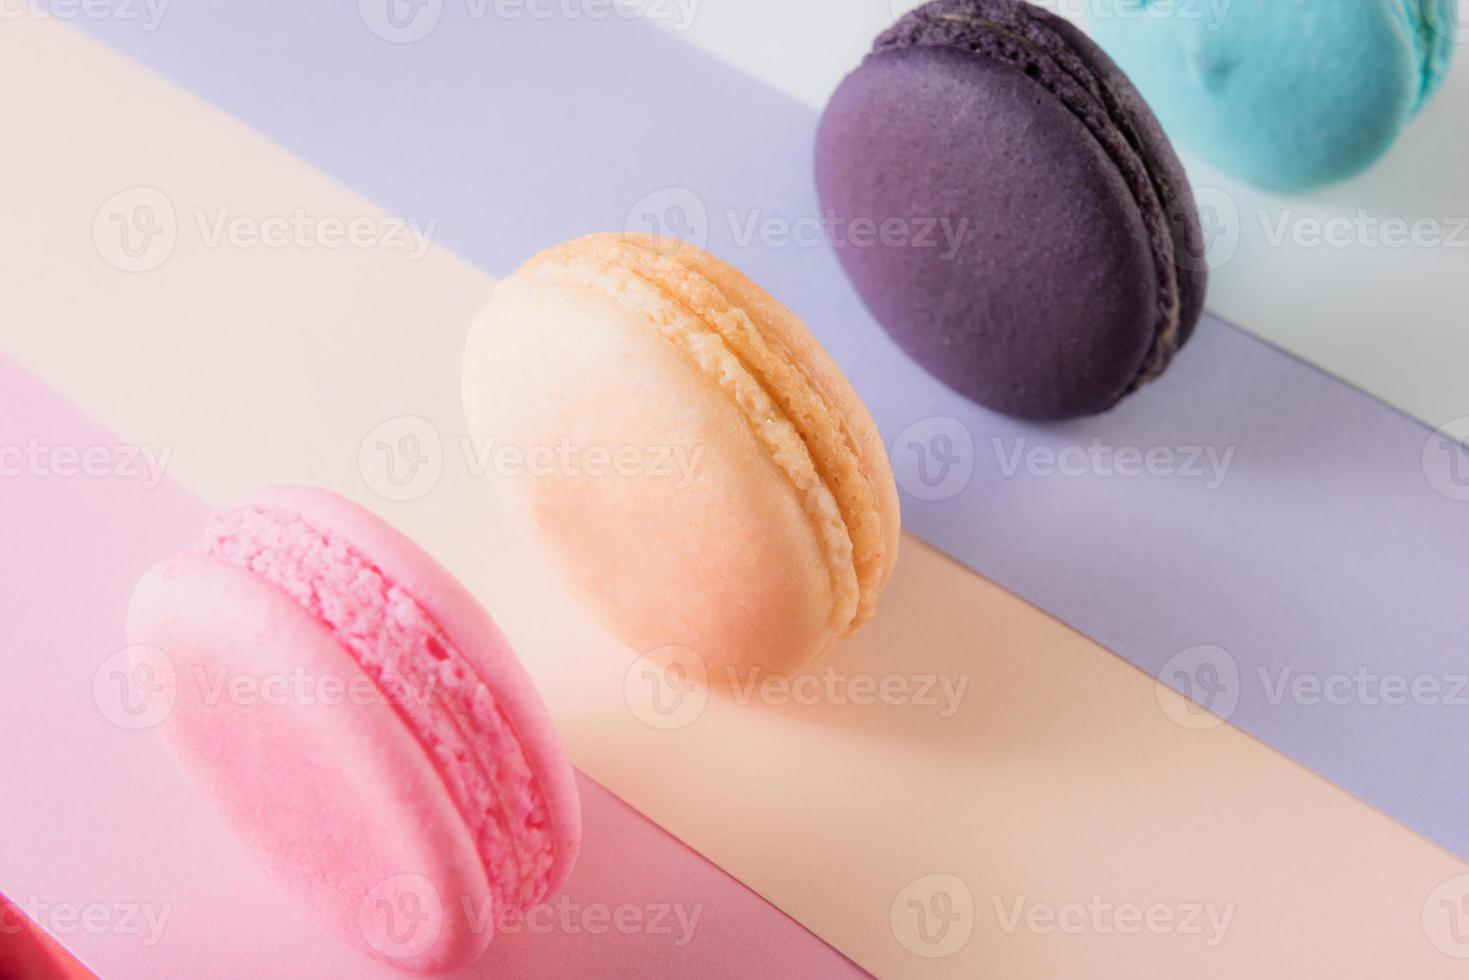 kleurrijke macarons of bitterkoekjes dessert zoet mooi om te eten foto